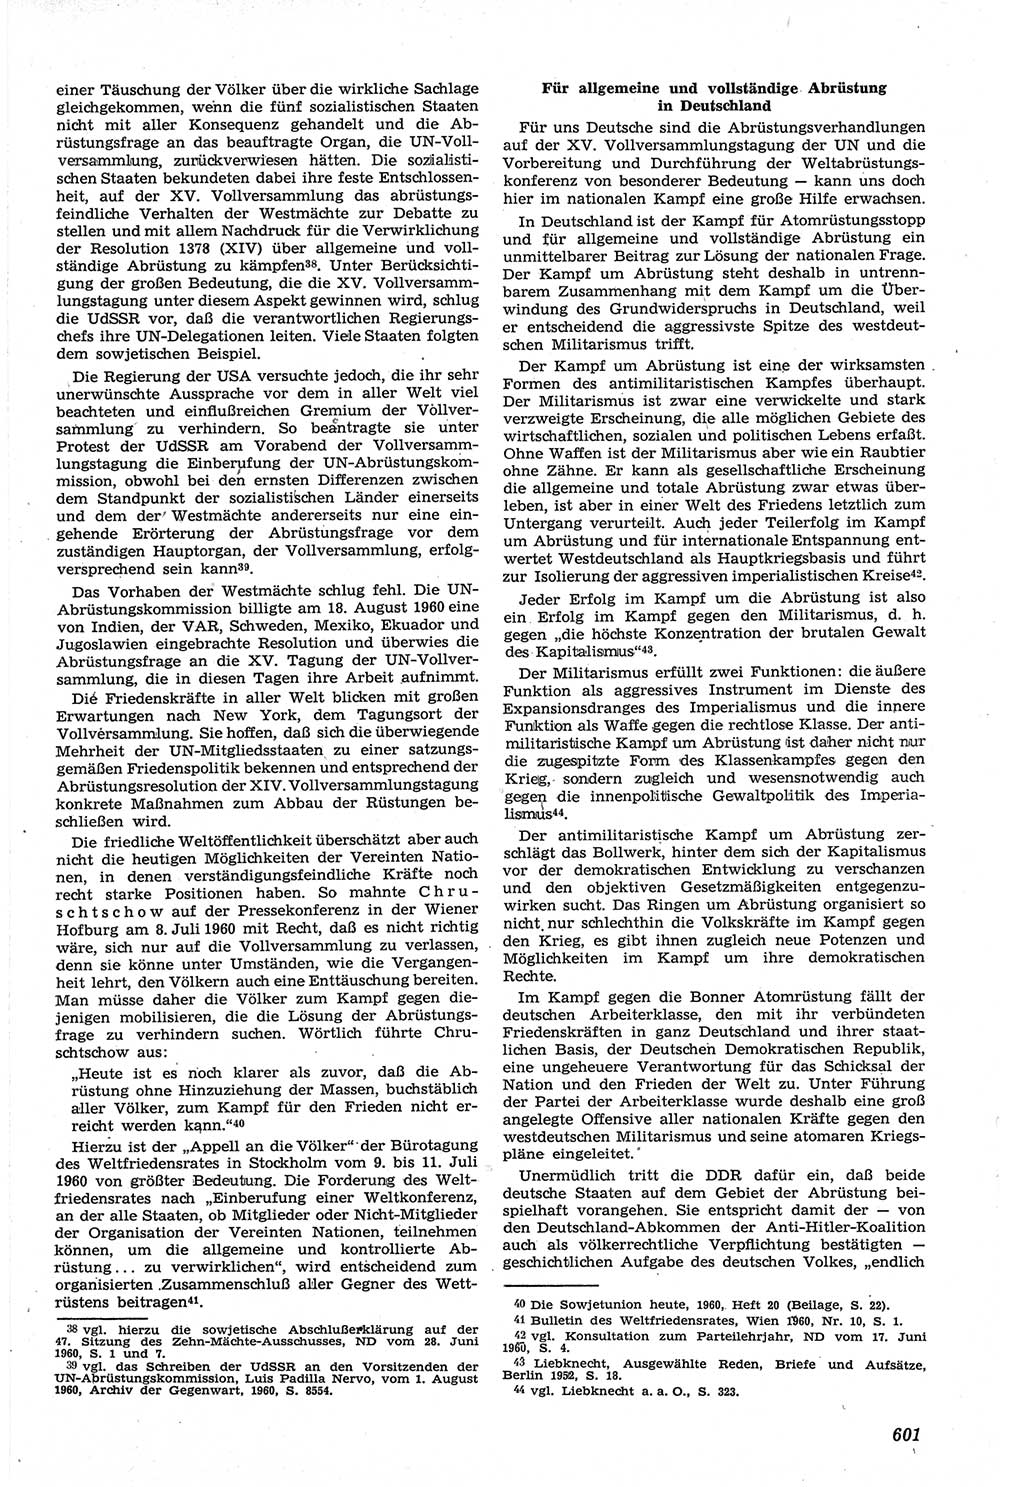 Neue Justiz (NJ), Zeitschrift für Recht und Rechtswissenschaft [Deutsche Demokratische Republik (DDR)], 14. Jahrgang 1960, Seite 601 (NJ DDR 1960, S. 601)